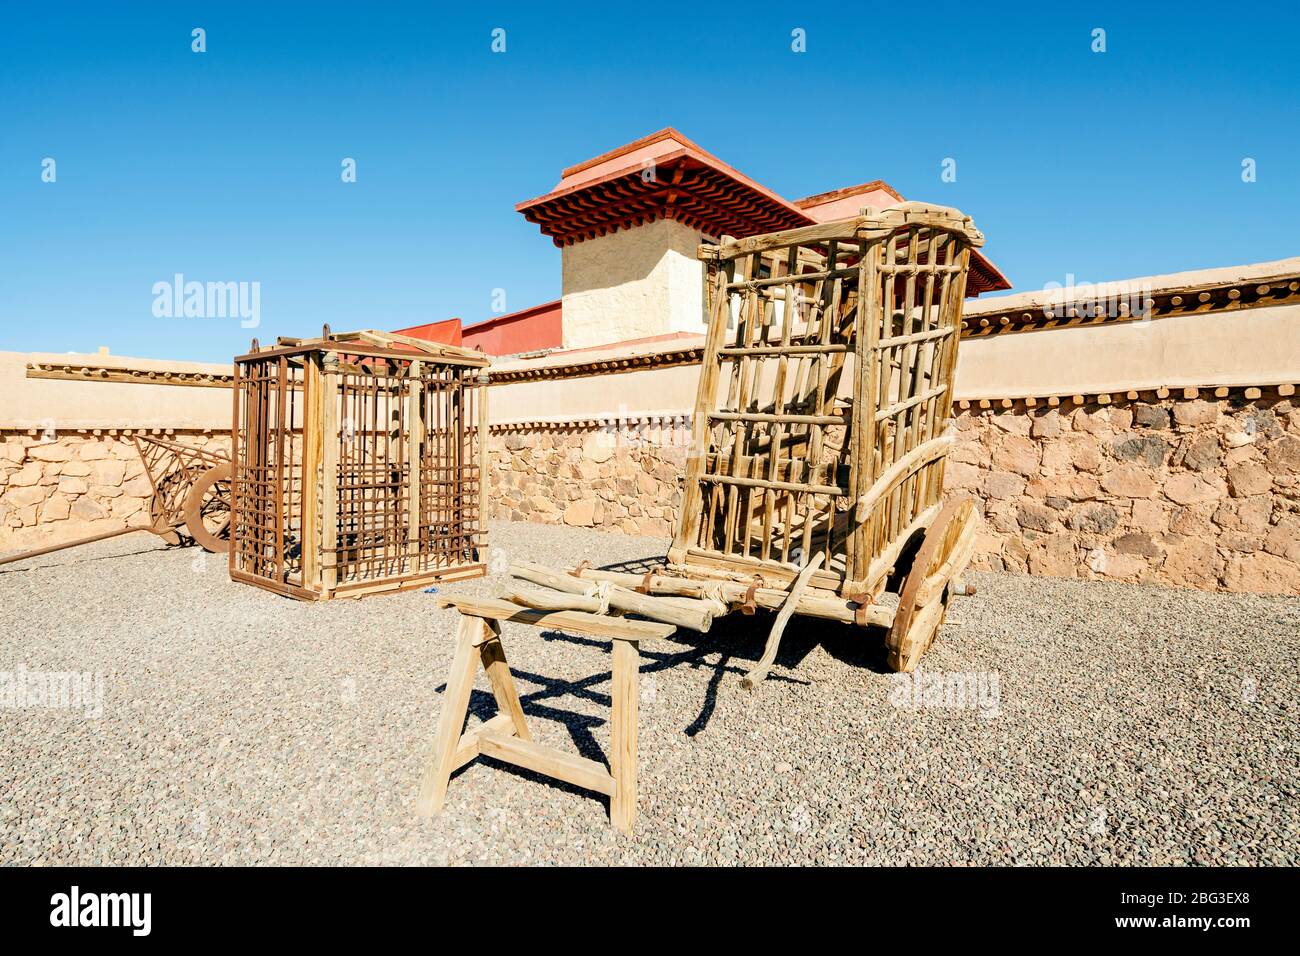 Ouarzazate, Maroc - 18 mars 2020: Les cages en bois originales props du film Gladiator tourné dans Cinema Atlas Studios, Maroc. Banque D'Images